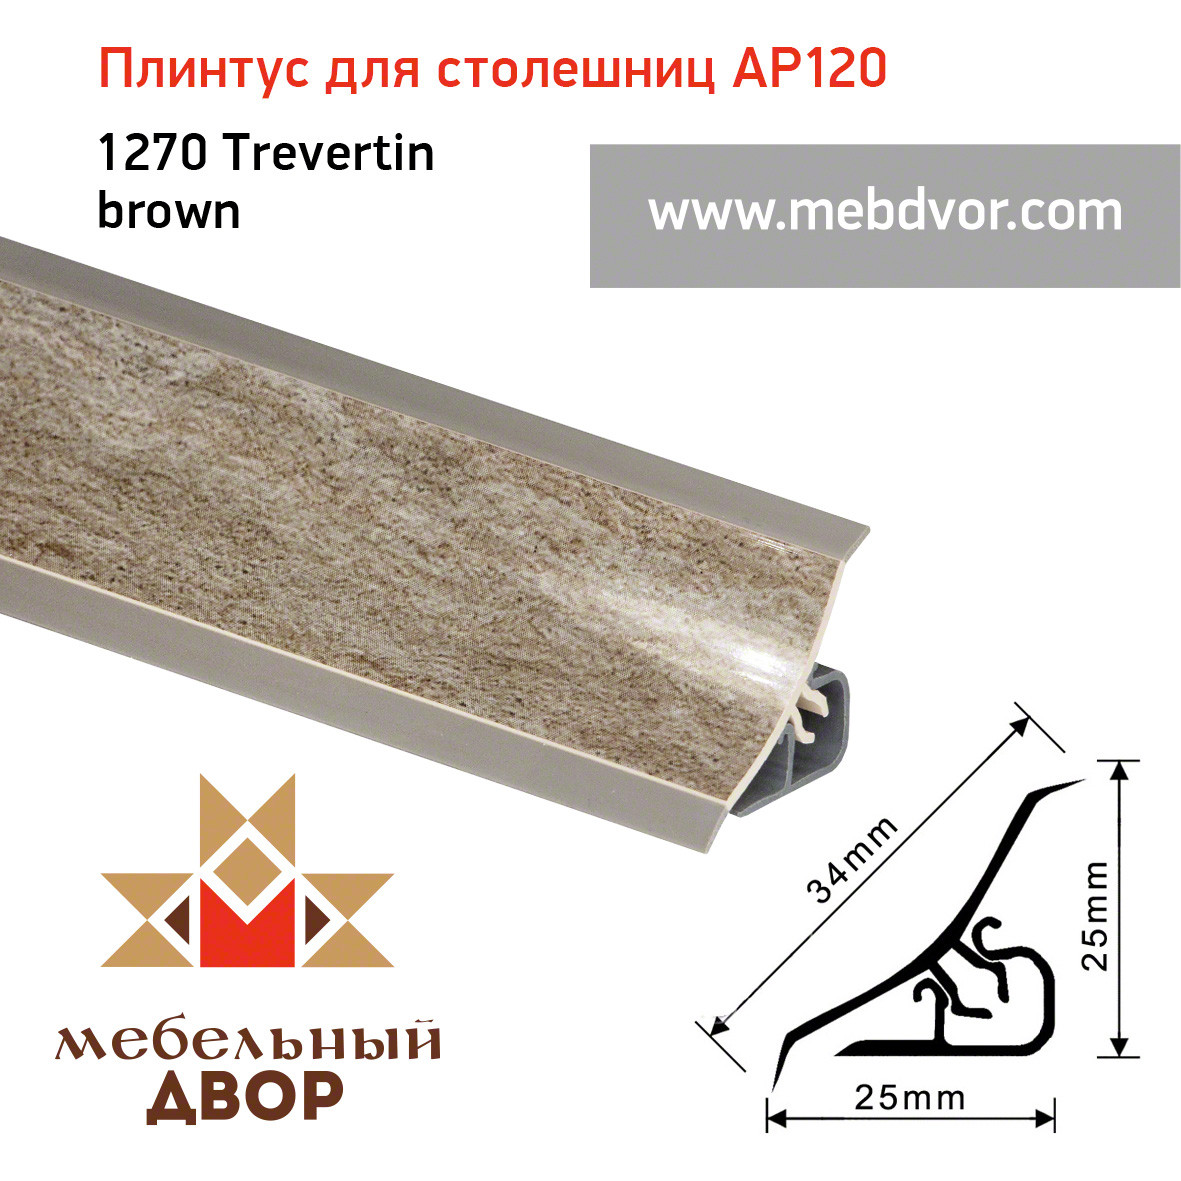 Плинтус для столешниц AP120 (1270_Trevertin brown), 3000 mm